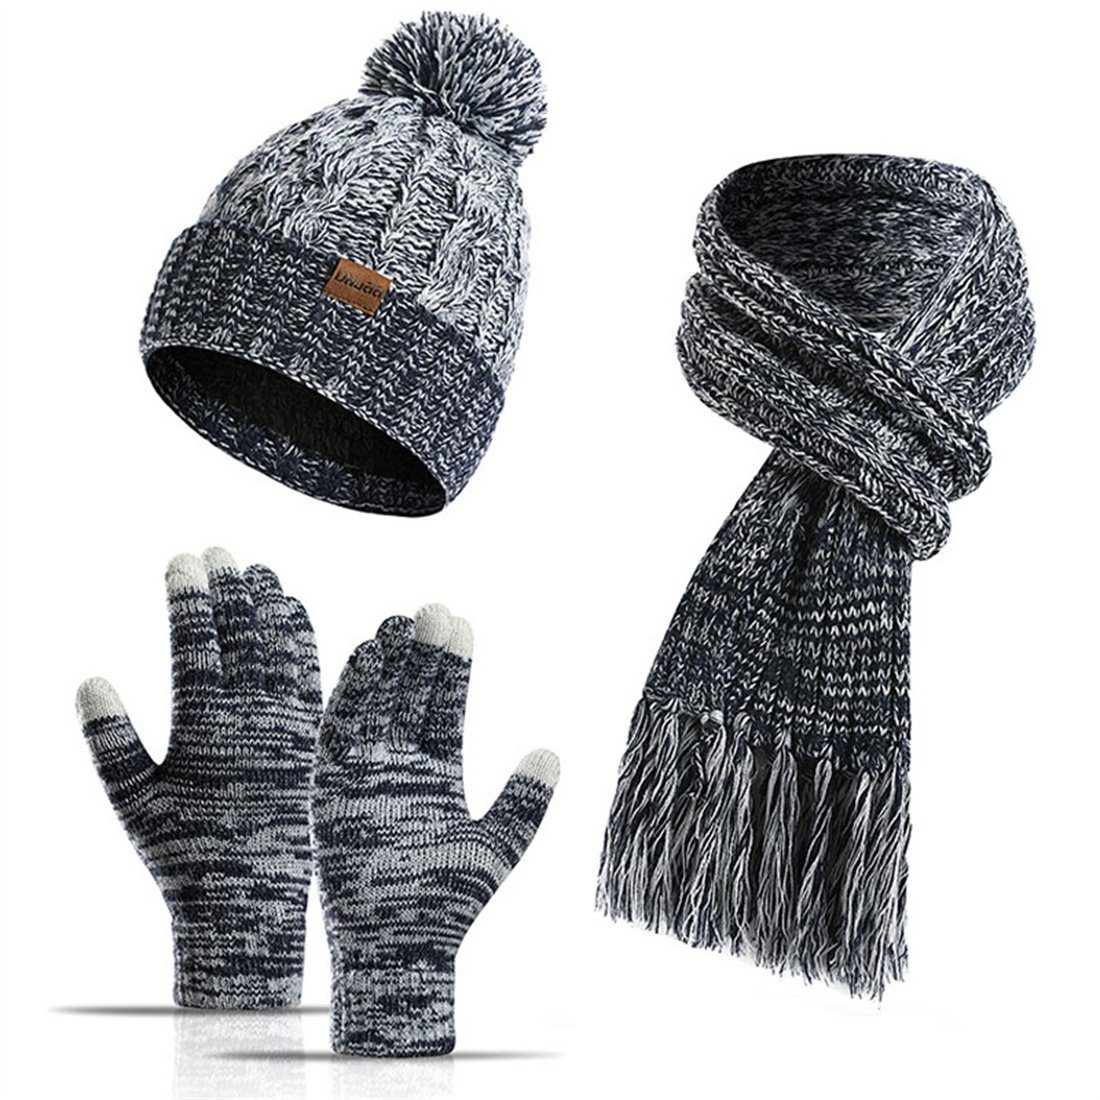 DÖRÖY Strickmütze Wintermütze aus Wolle, Mütze + Schal + Touchscreen-Handschuhe 3er-Set blau